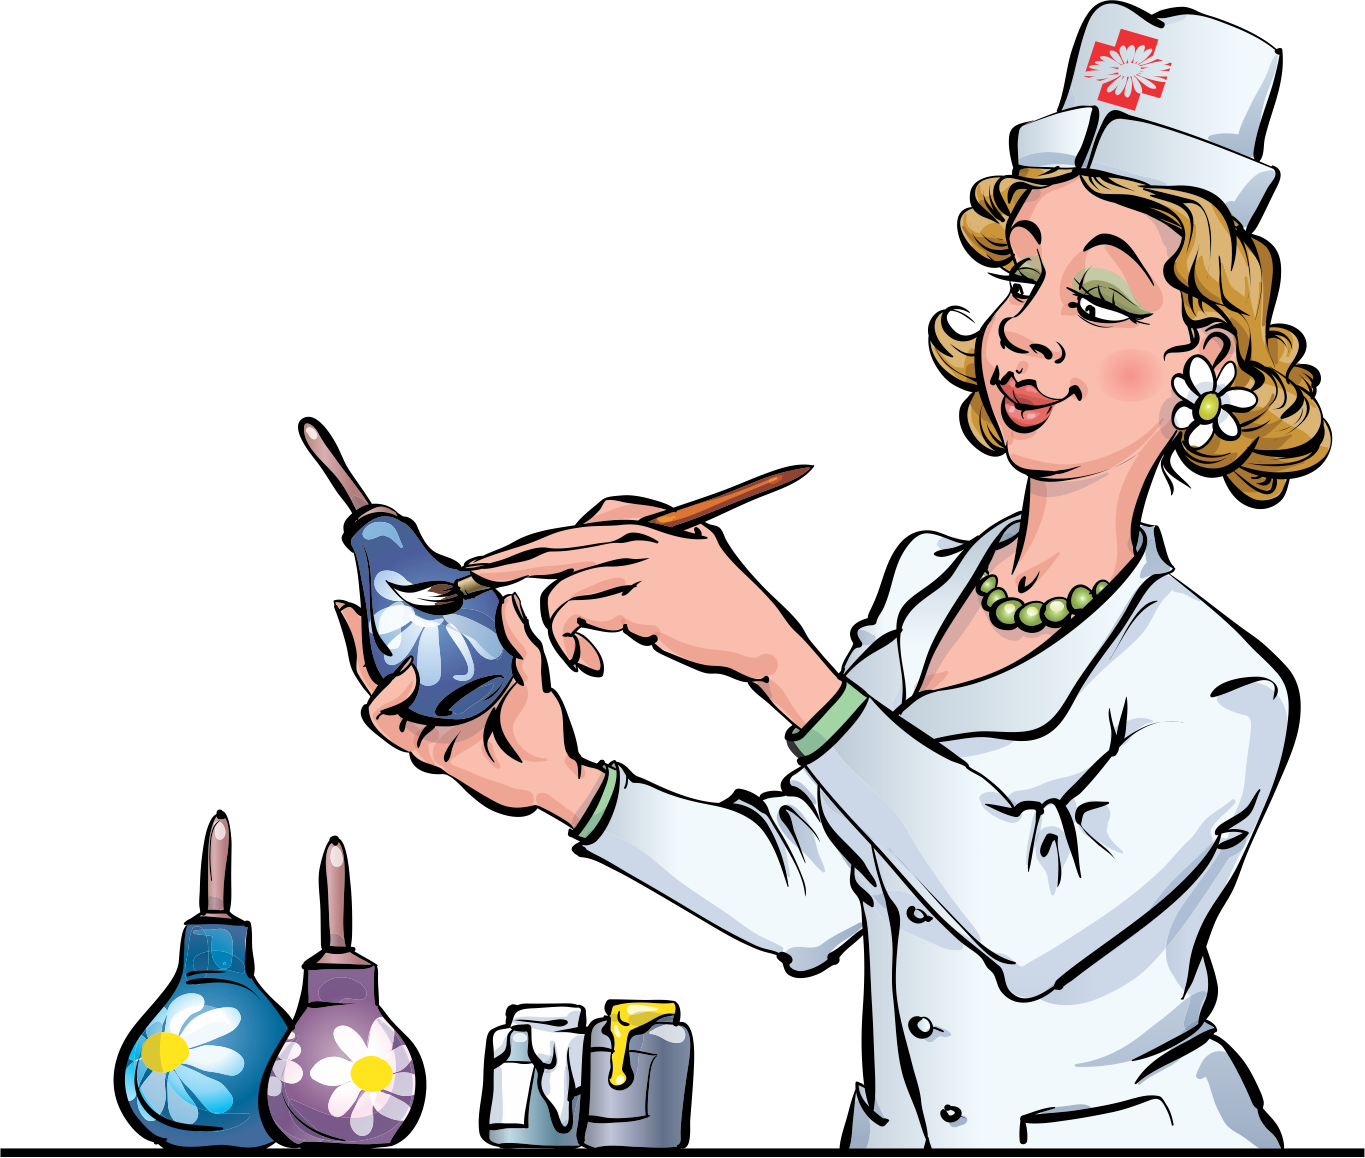 День медицинского работника карикатура. Медсестра карикатура. Веселые картинки про медиков. День медика юмор. В день рождения лаборанта николаю подарили подарок